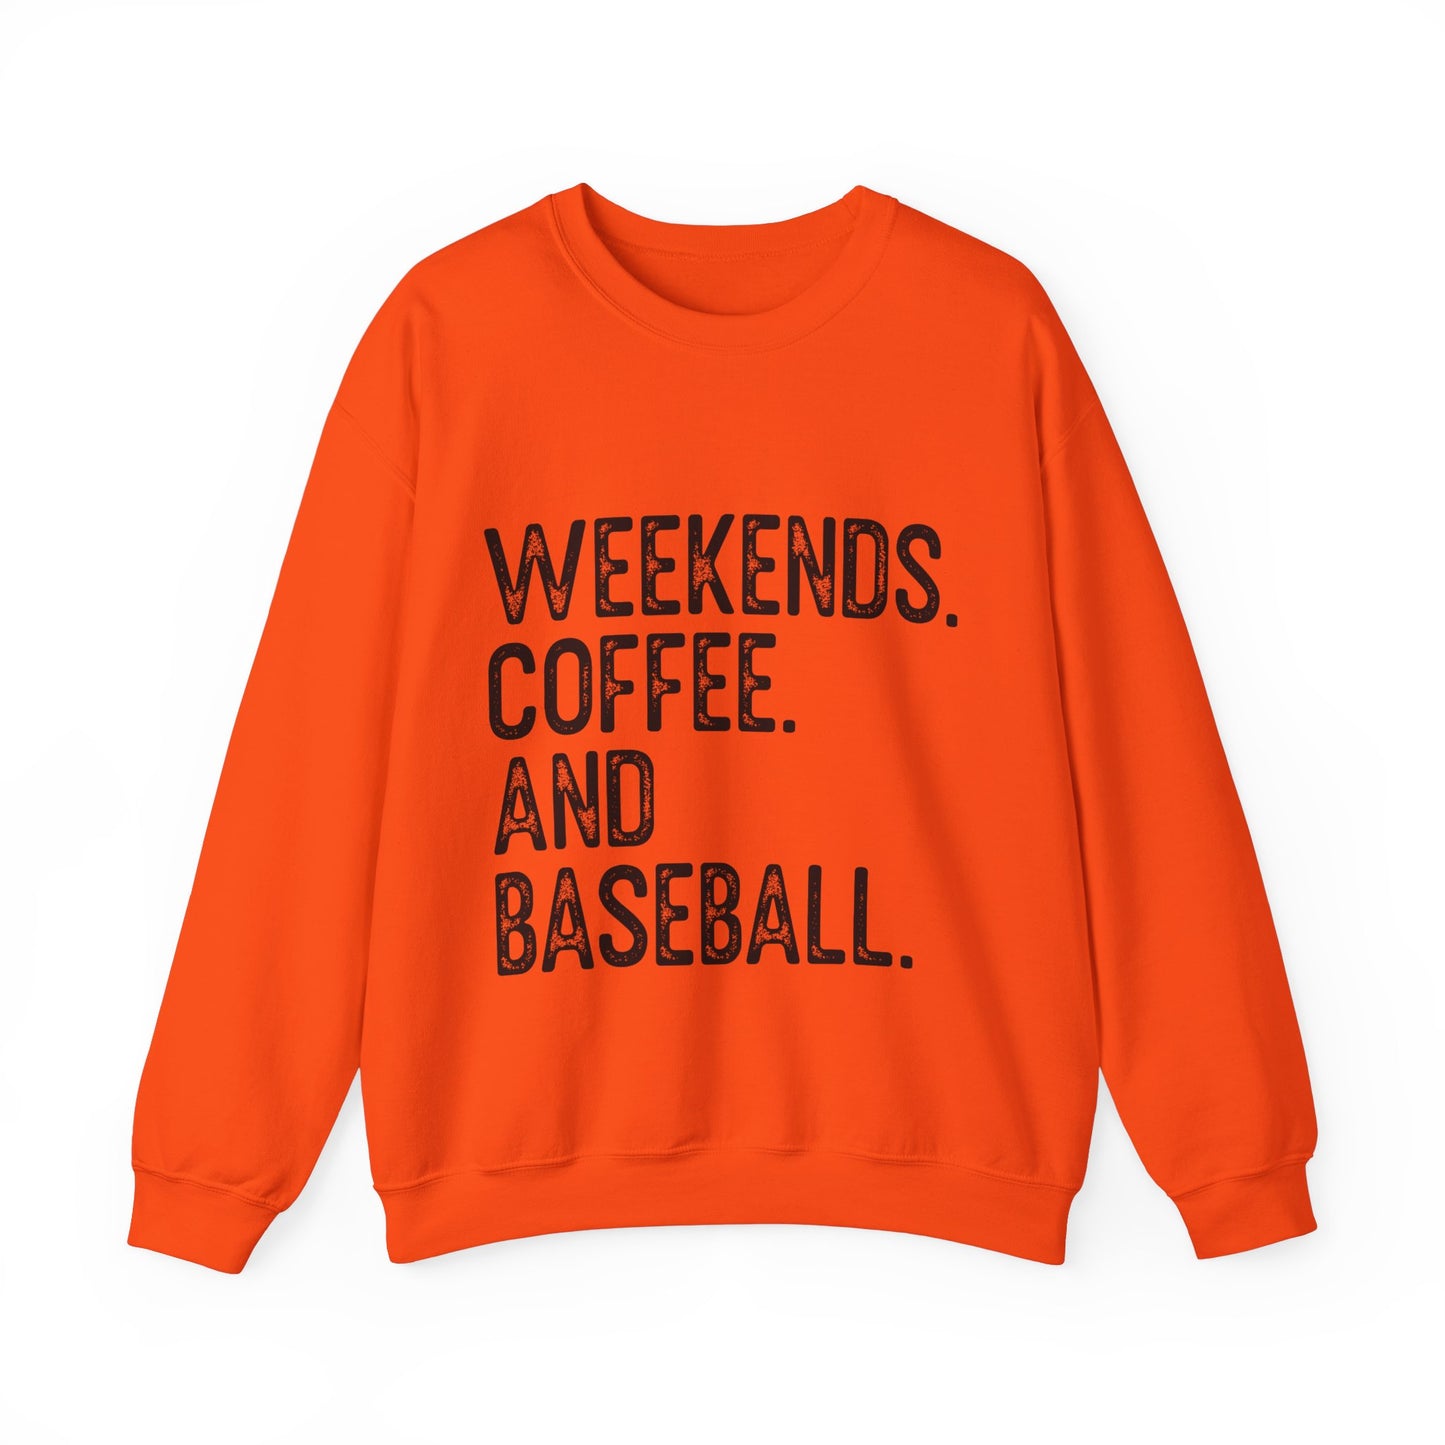 Weekends Coffee Baseball Women's Crewneck Sweatshirt